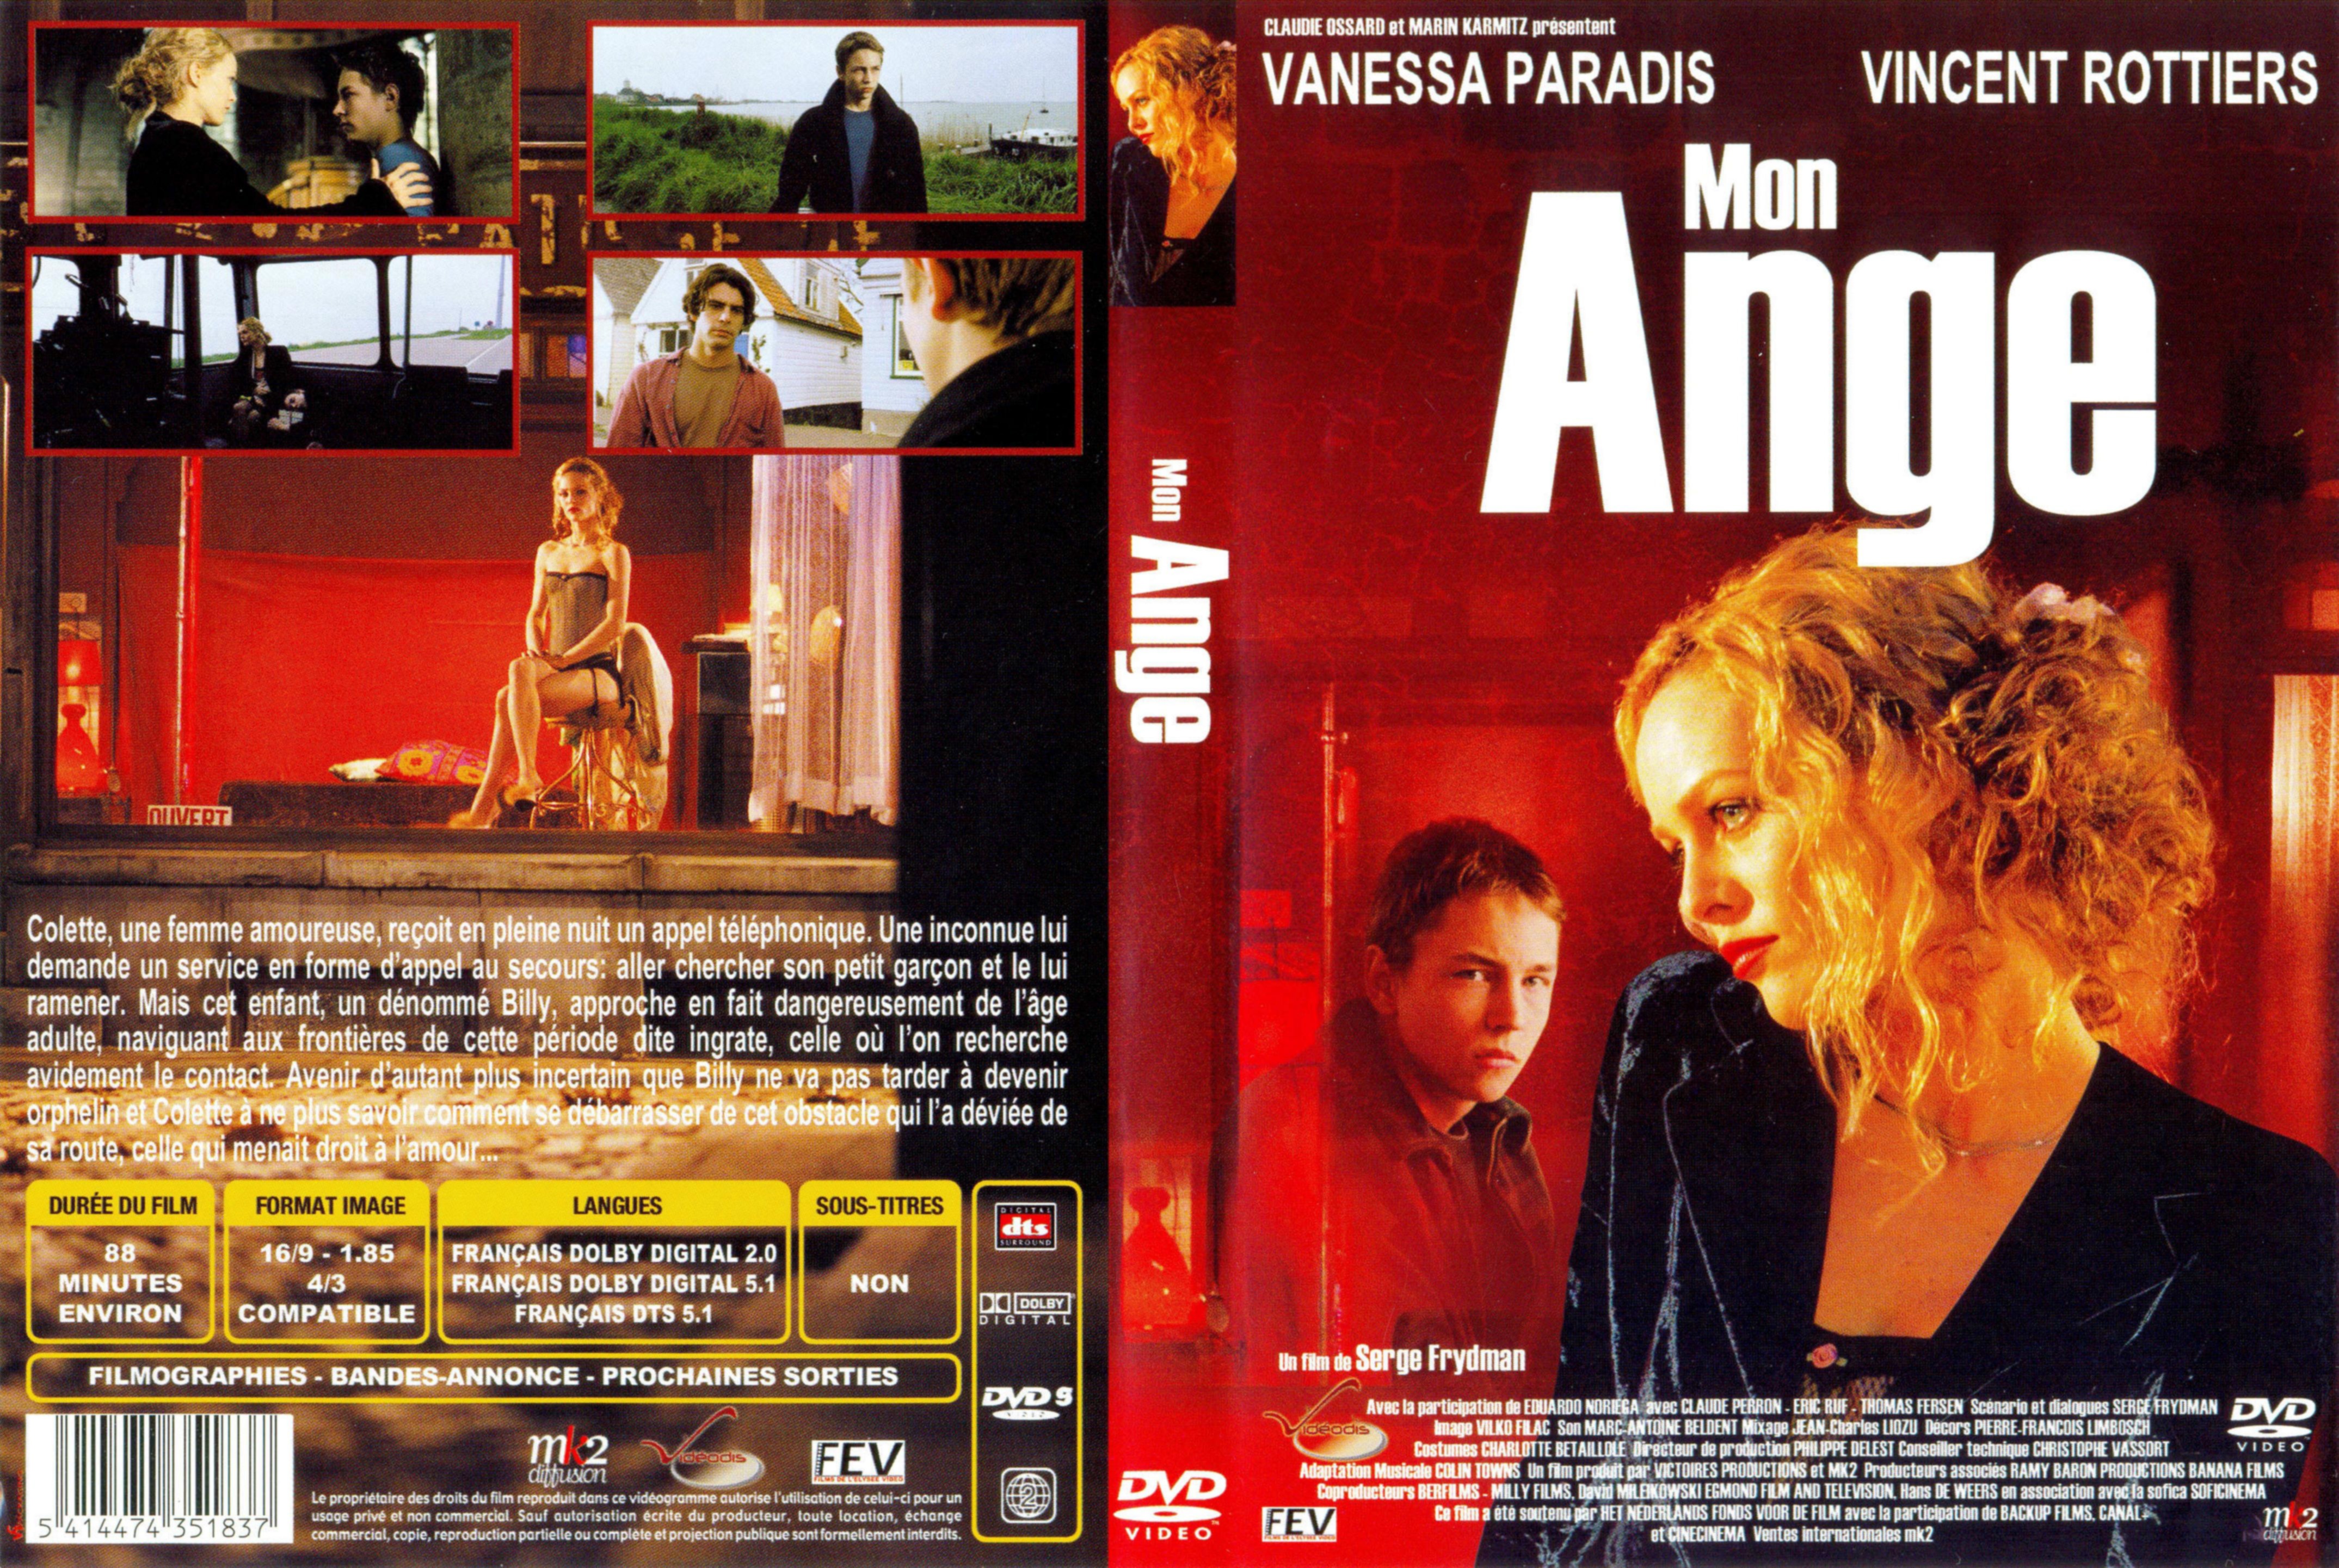 Jaquette DVD Mon ange v2